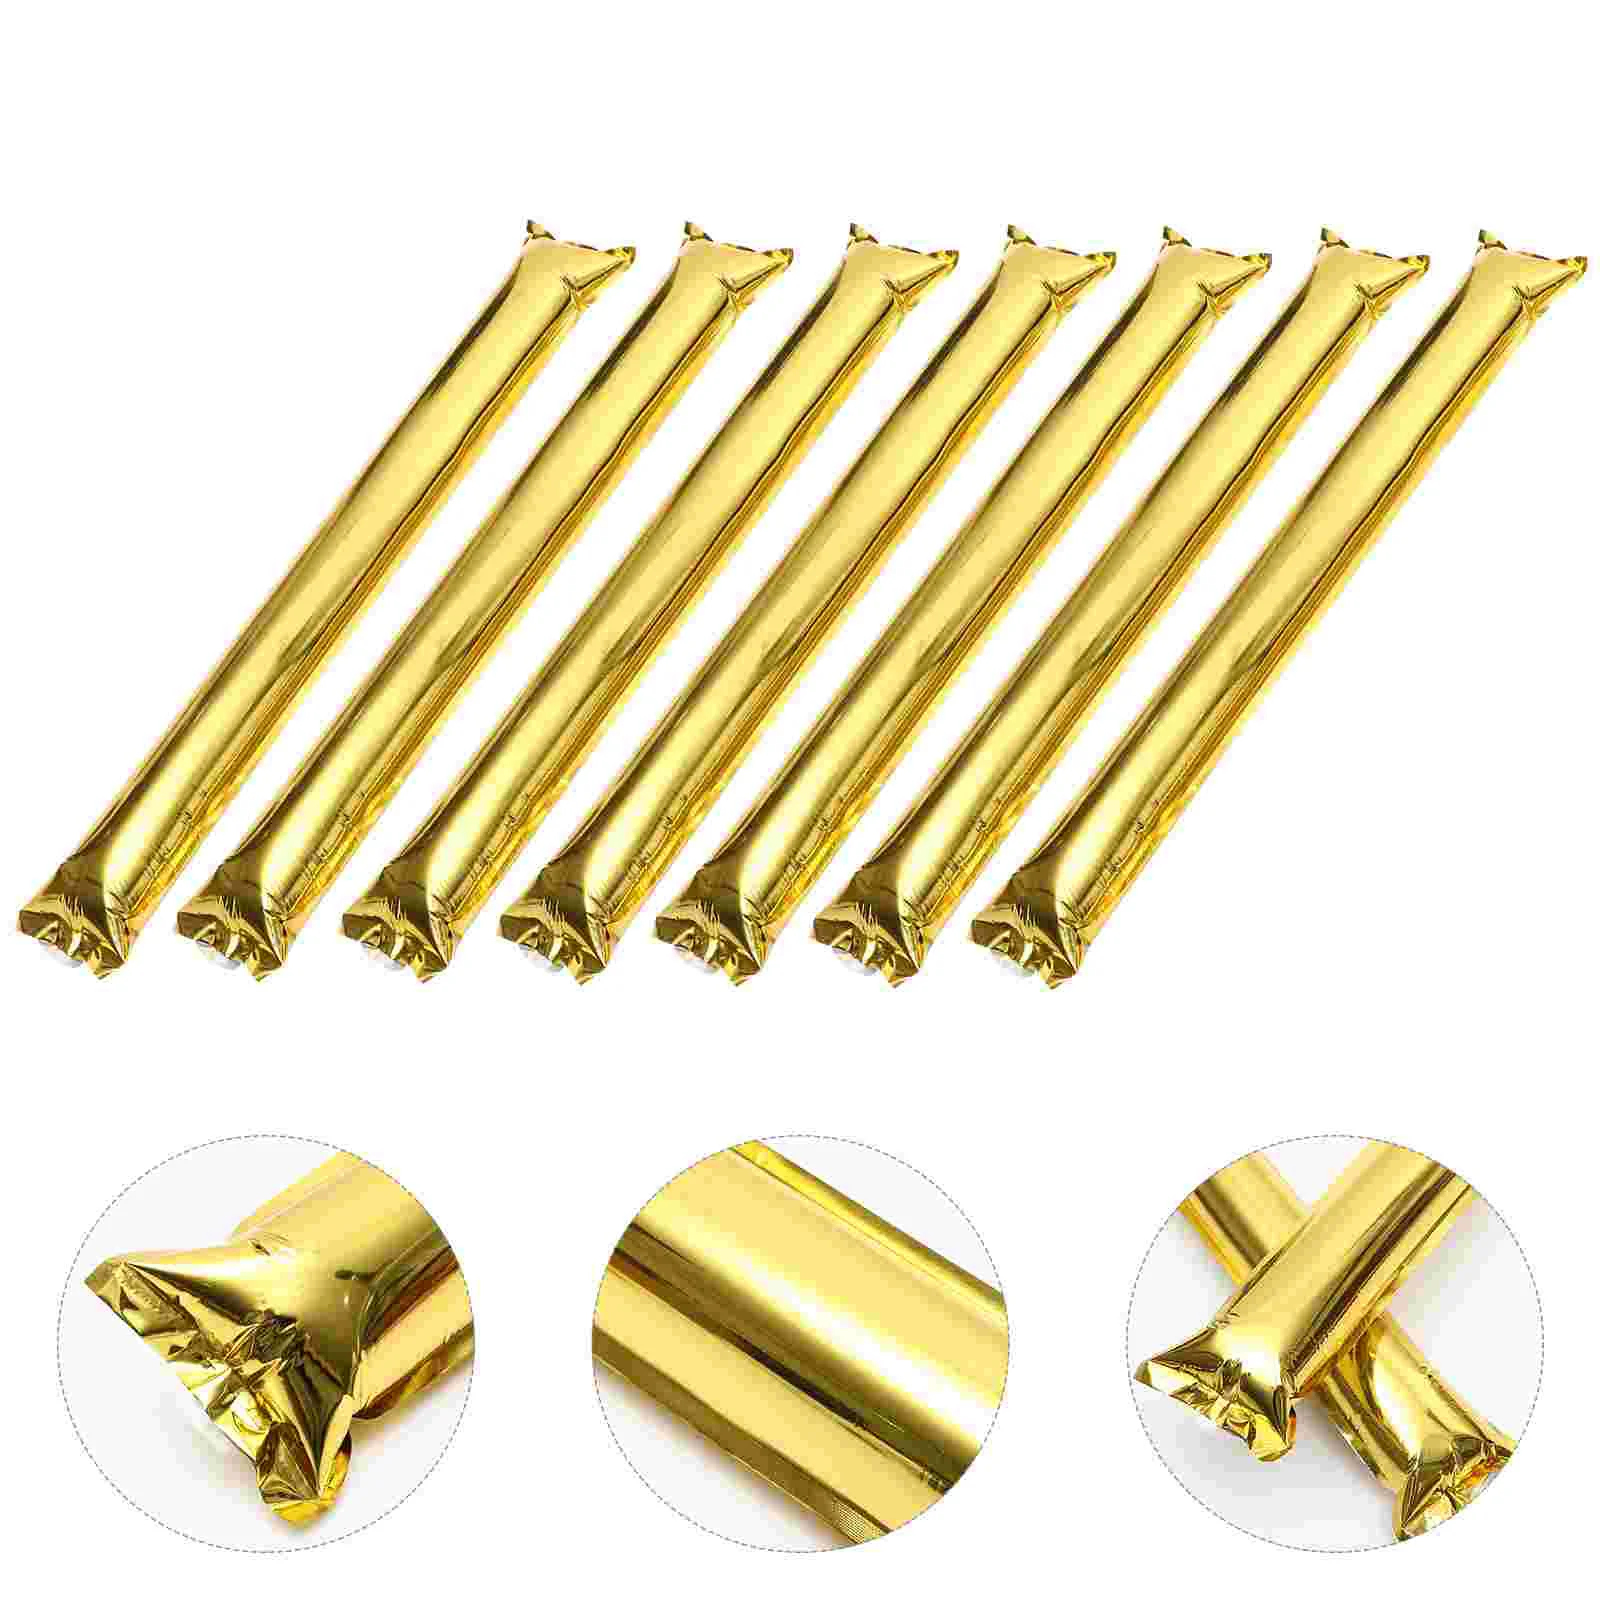 

Надувные колокольчики Golden Thunder Sticks для чарлидинга и спортивных мероприятий